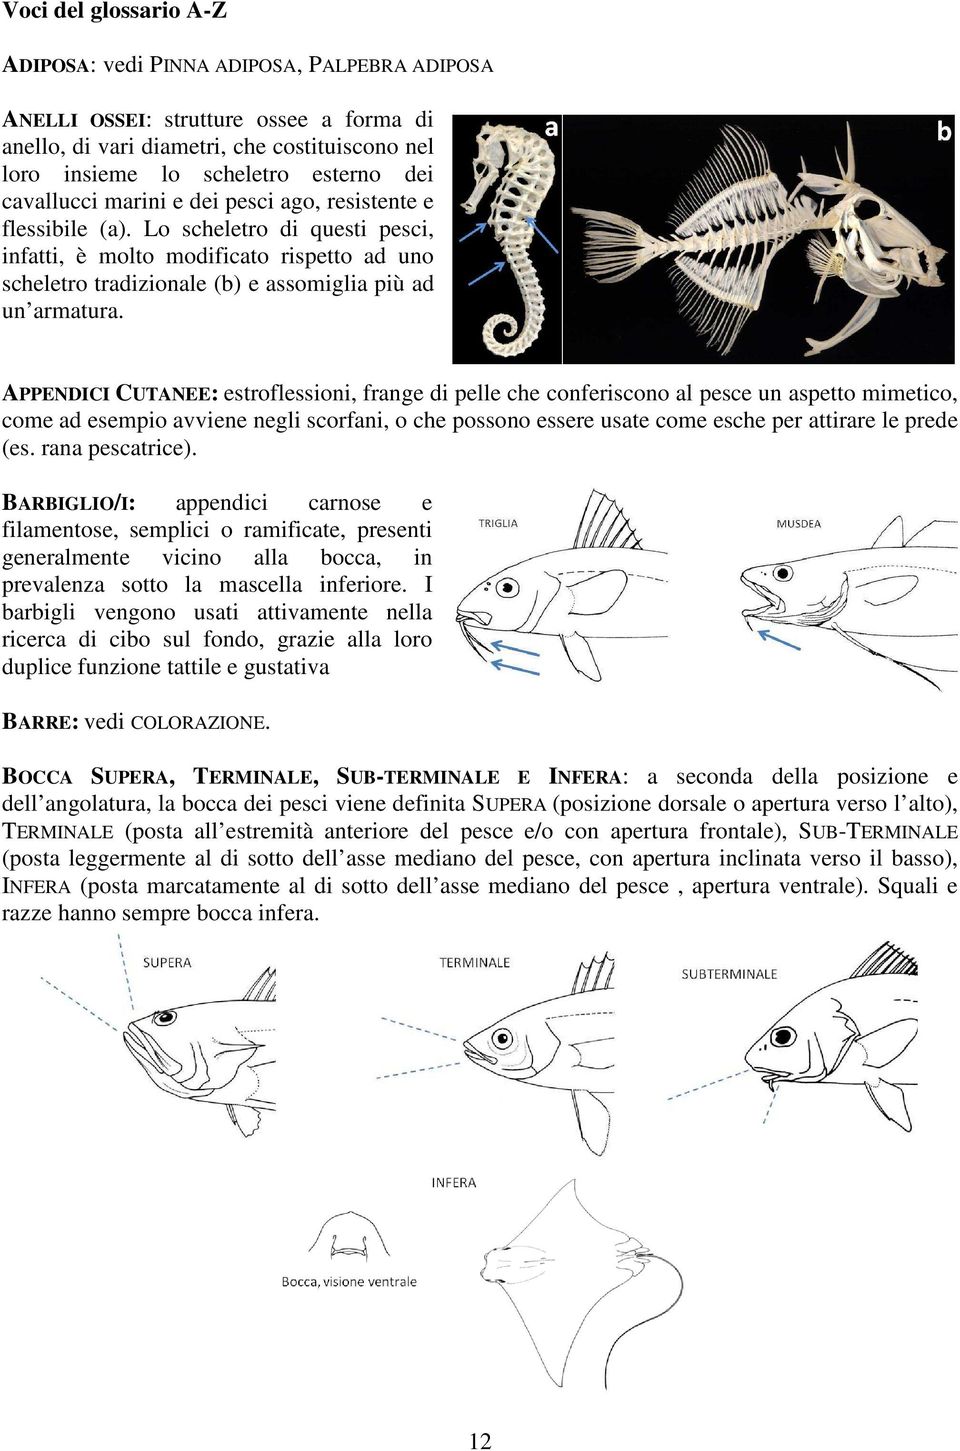 APPENDICI CUTANEE: estroflessioni, frange di pelle che conferiscono al pesce un aspetto mimetico, come ad esempio avviene negli scorfani, o che possono essere usate come esche per attirare le prede